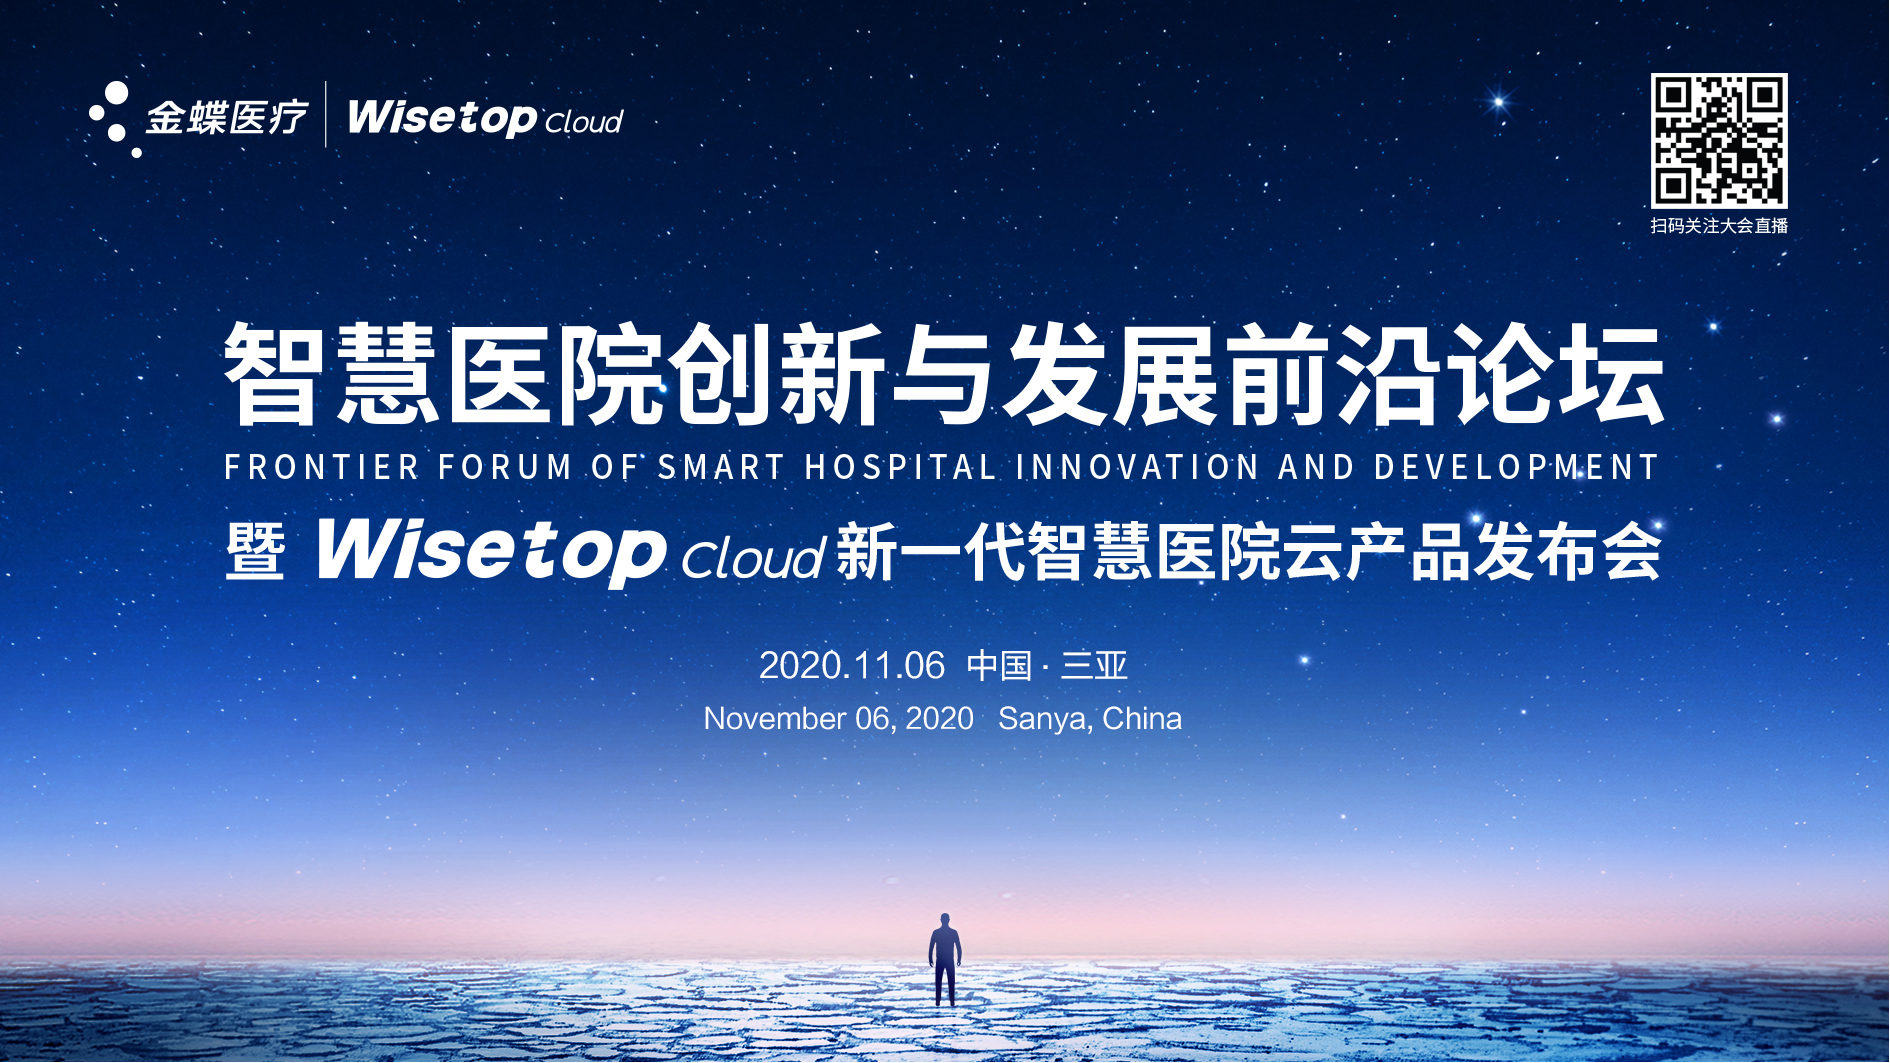 金蝶医疗新一代智慧医院云产品Wisetop Cloud将于11月6日正式发布